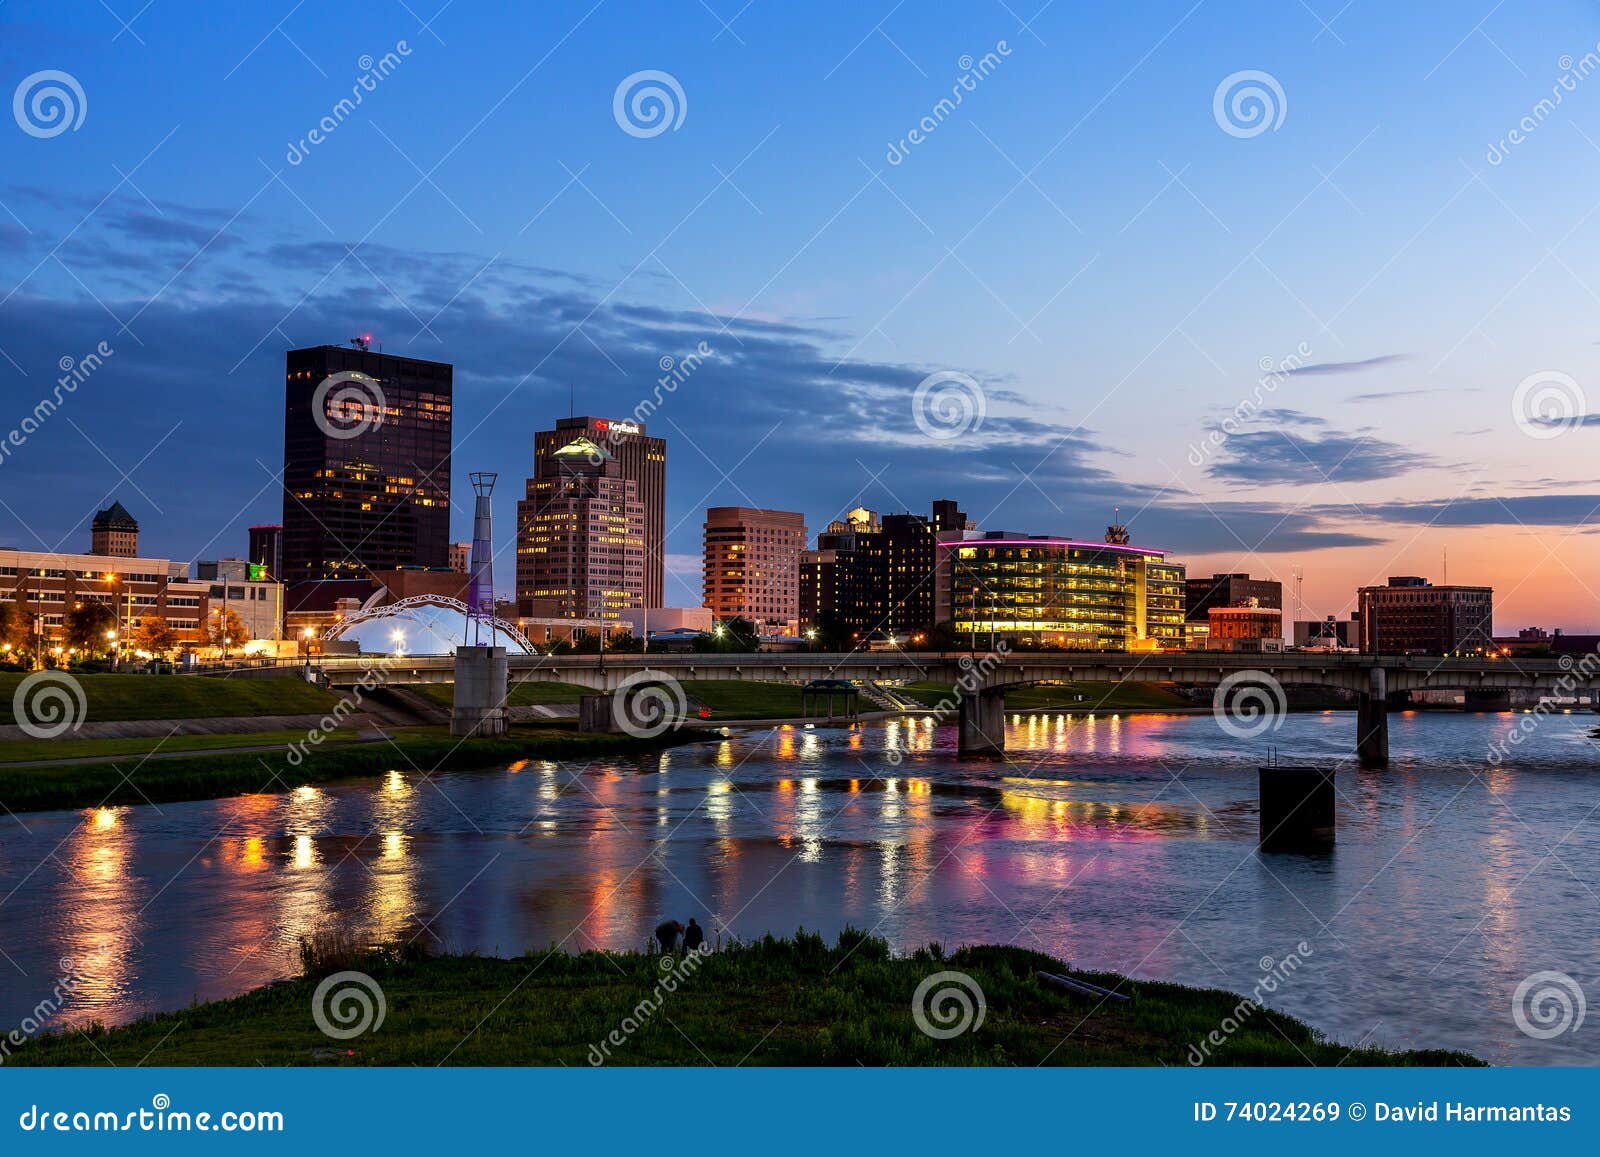 Dayton, Ohio Skyline at Sunset Editorial Stock Image Image of station